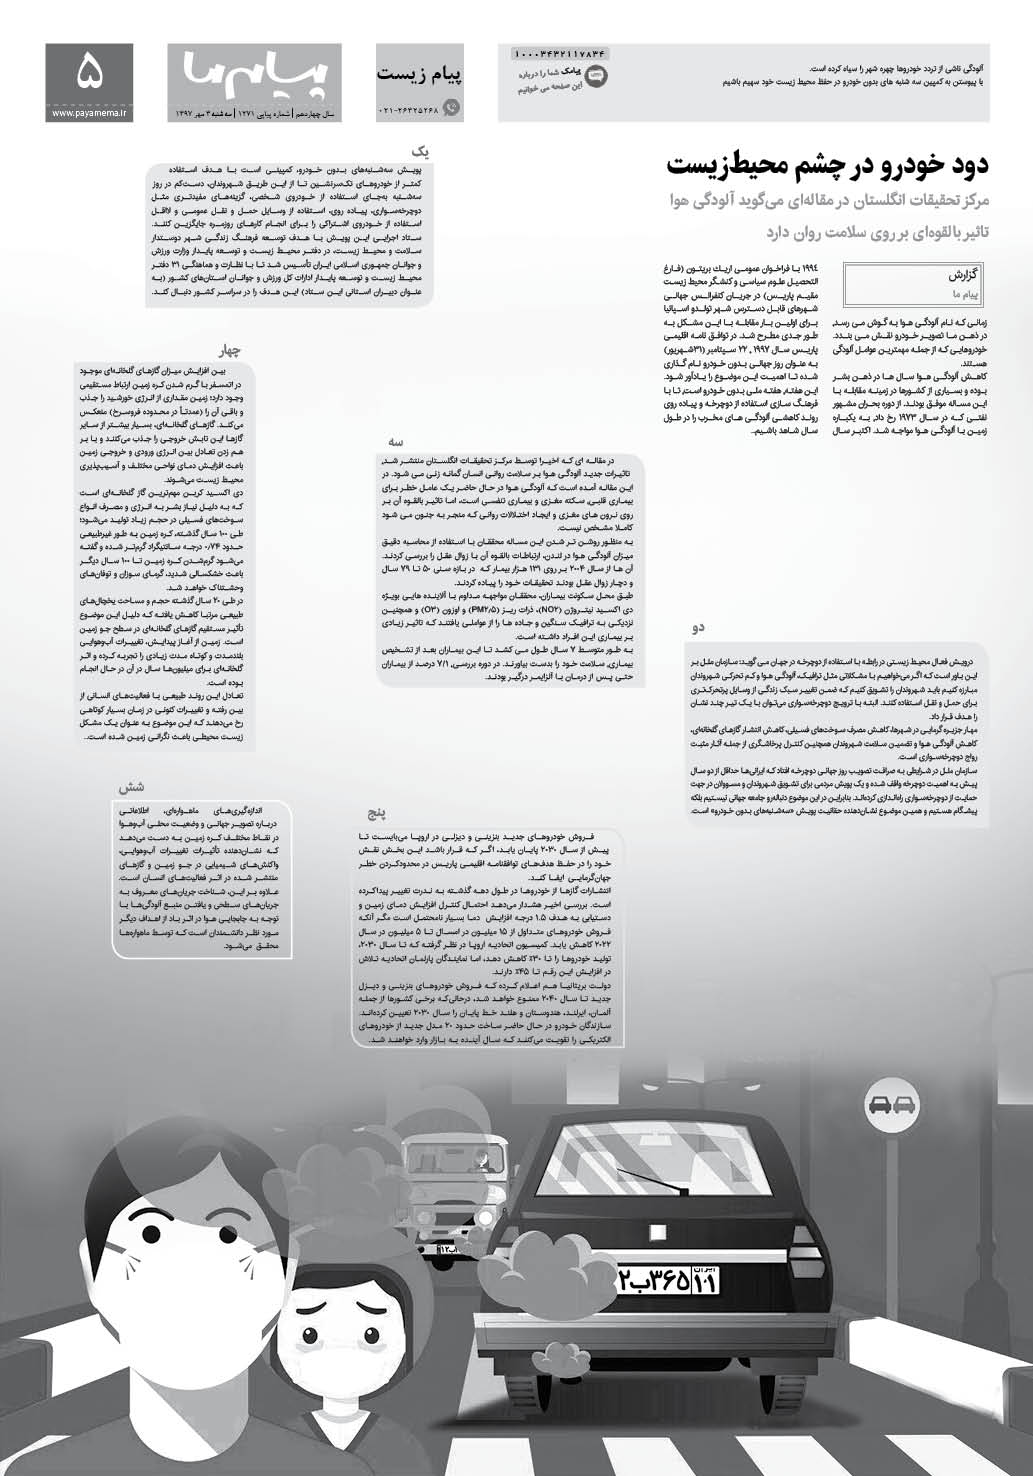 صفحه پیام زیست شماره 1271 روزنامه پیام ما